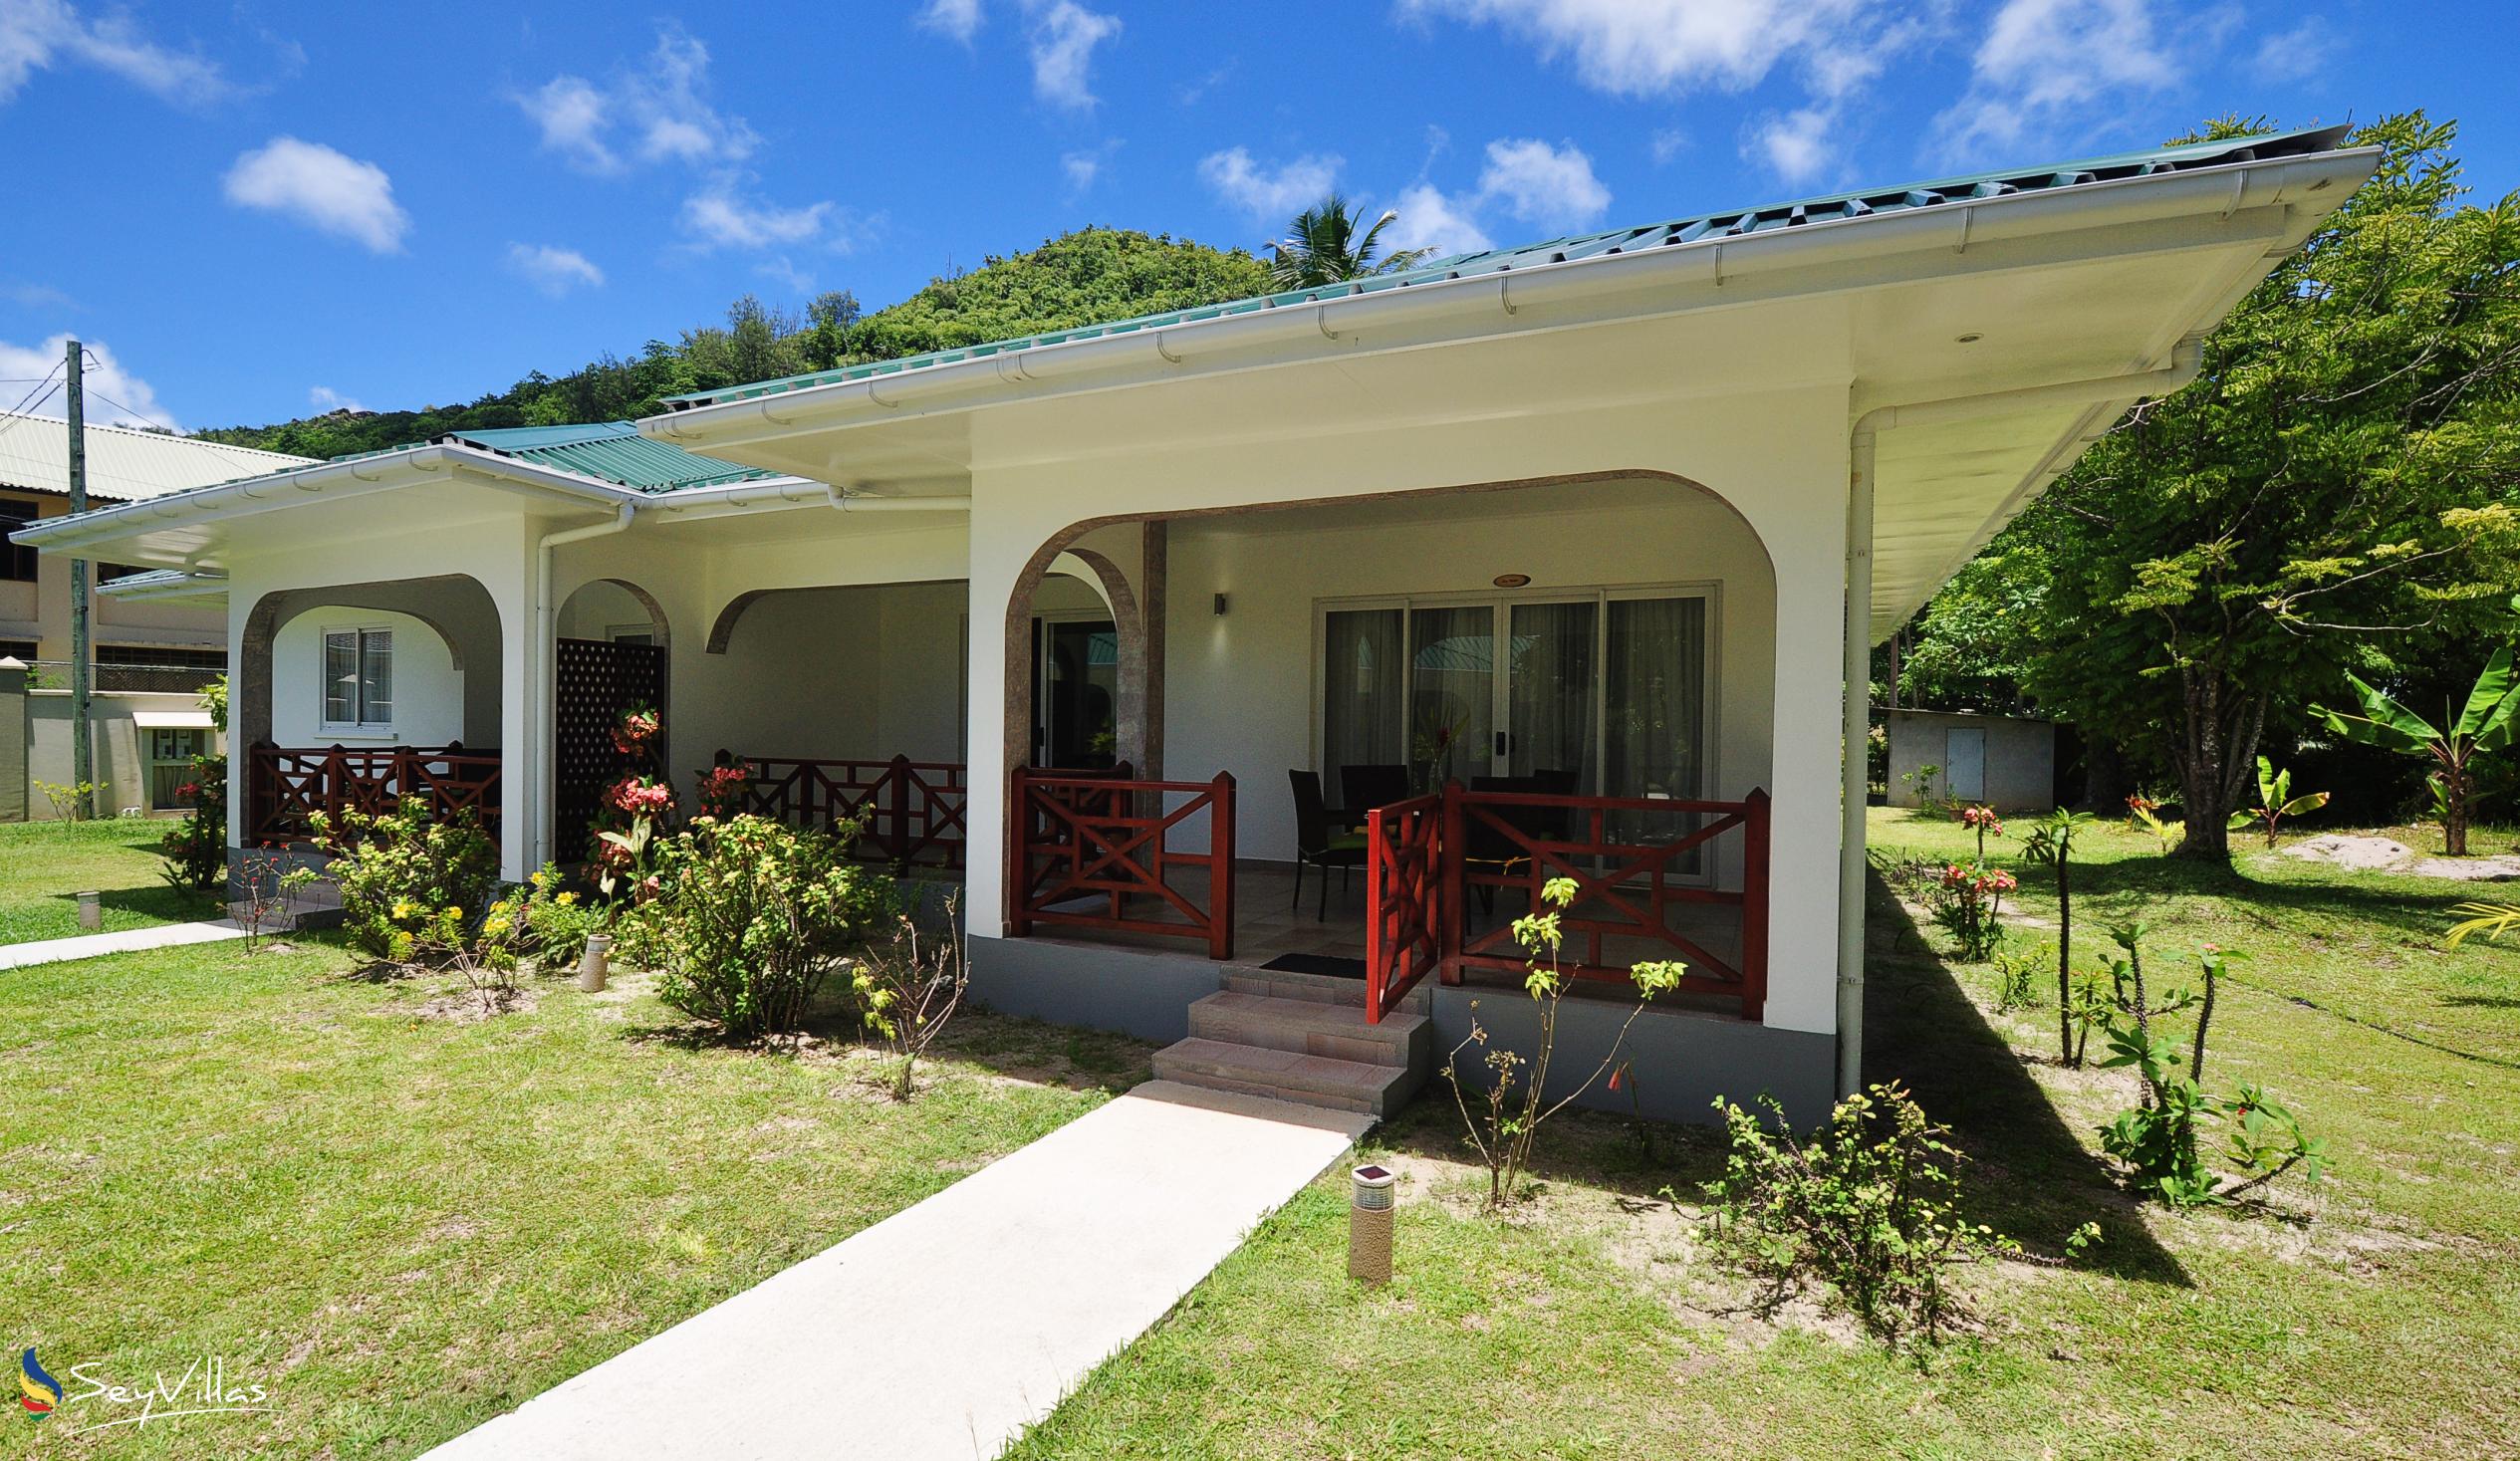 Foto 52: Coco Blanche - Familienvilla - Mahé (Seychellen)